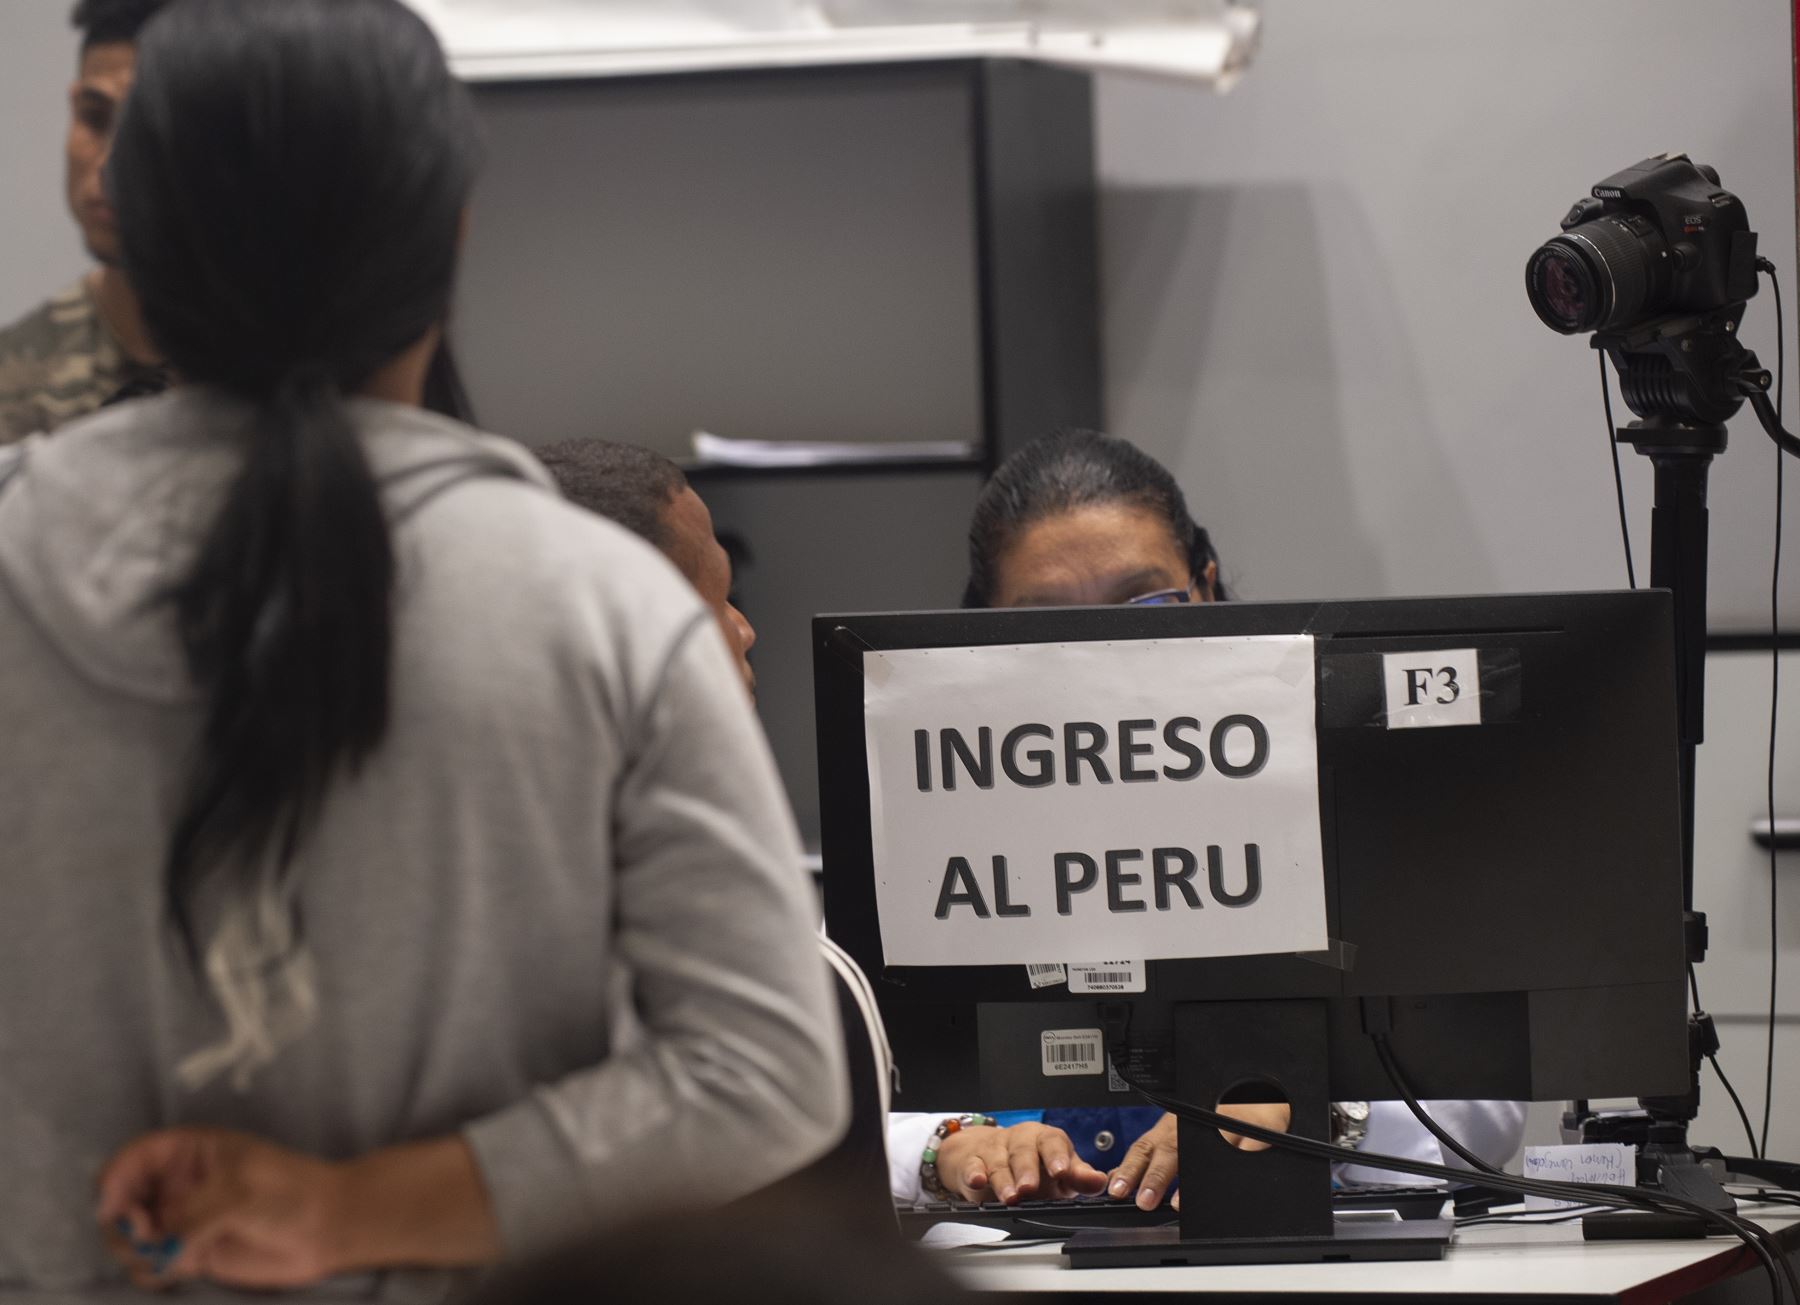 Los ciudadanos venezolanos presentan sus documentos para obtener una solicitud de refugio en el puesto fronterizo peruano en el centro binacional de atención de fronteras (CEBAF) en Tumbes el 13 de junio de 2019. - "Entre el 11 y el 12 de junio, más de 6,000 venezolanos han ingresado al territorio nacional. "dijo Wilmer Dios, gobernador de la región norte de Tumbes, en la frontera con Ecuador, donde casi todos estos migrantes entran al Perú. Alegando razones de seguridad, el gobierno peruano anunció la se